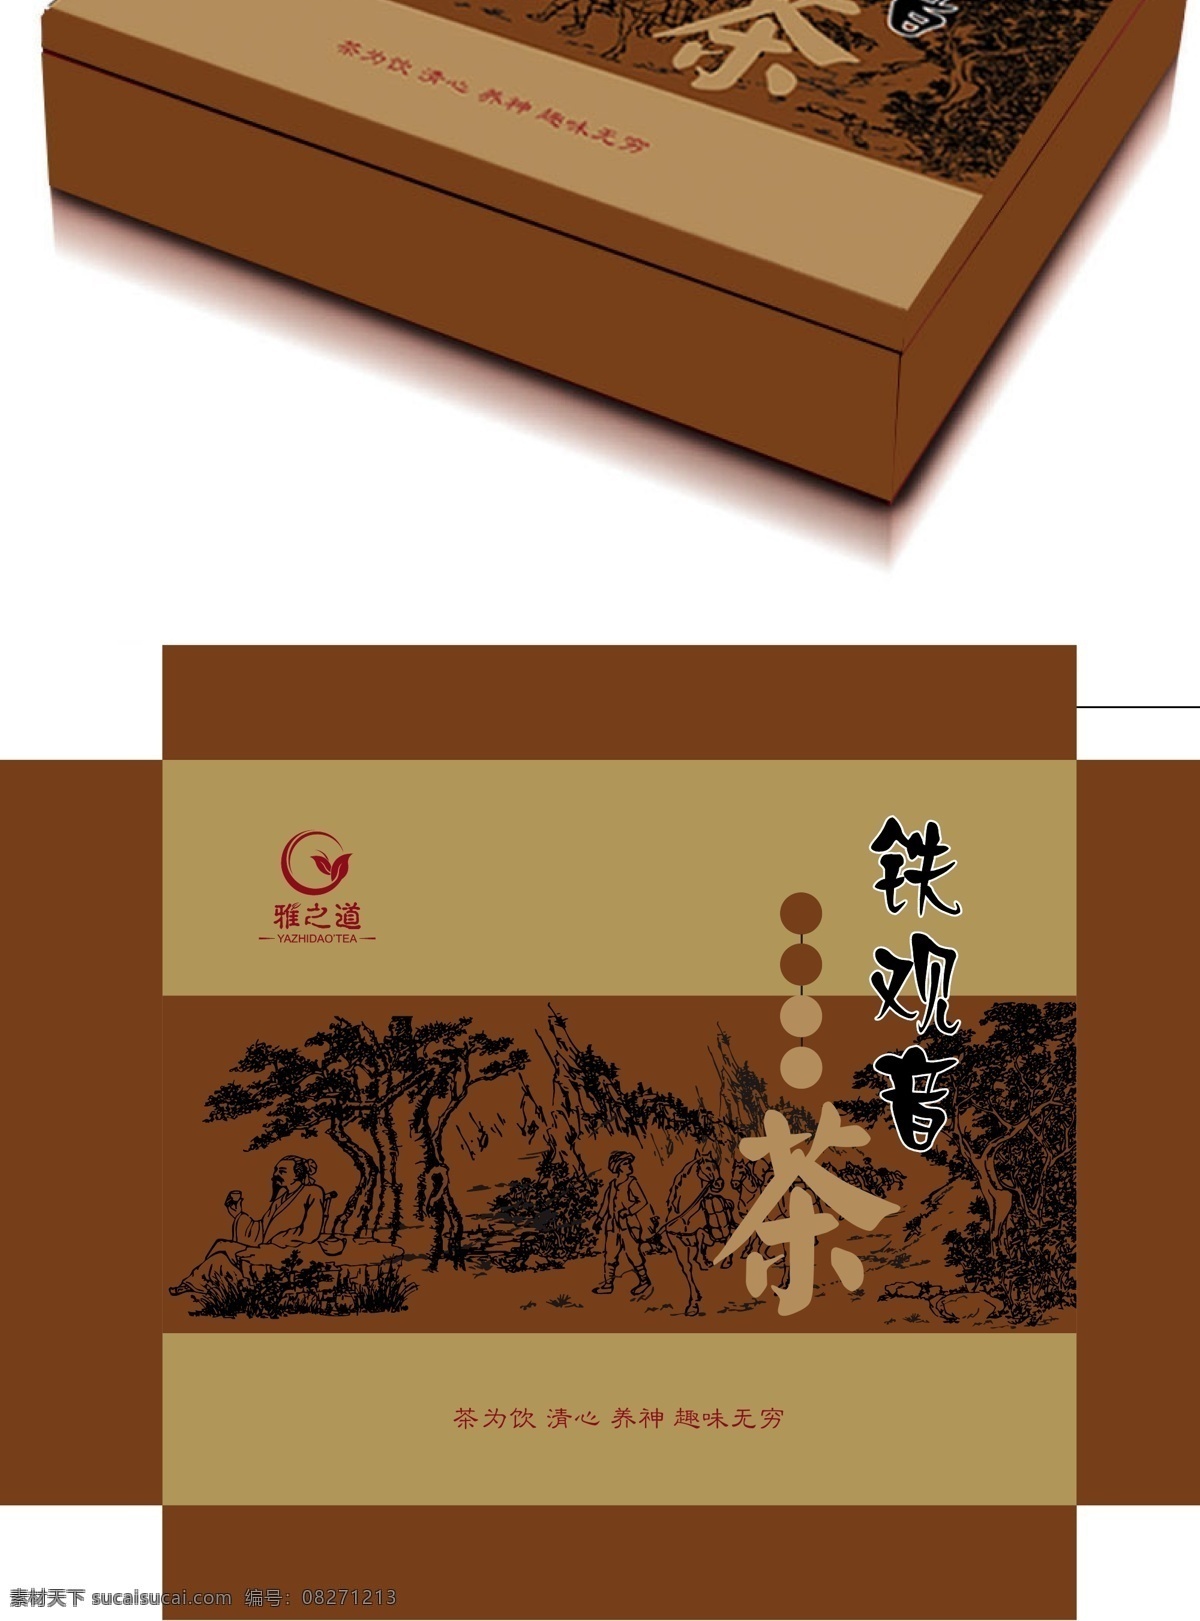 铁观音茶叶盒 茶叶展示盒 包装设计 矢量